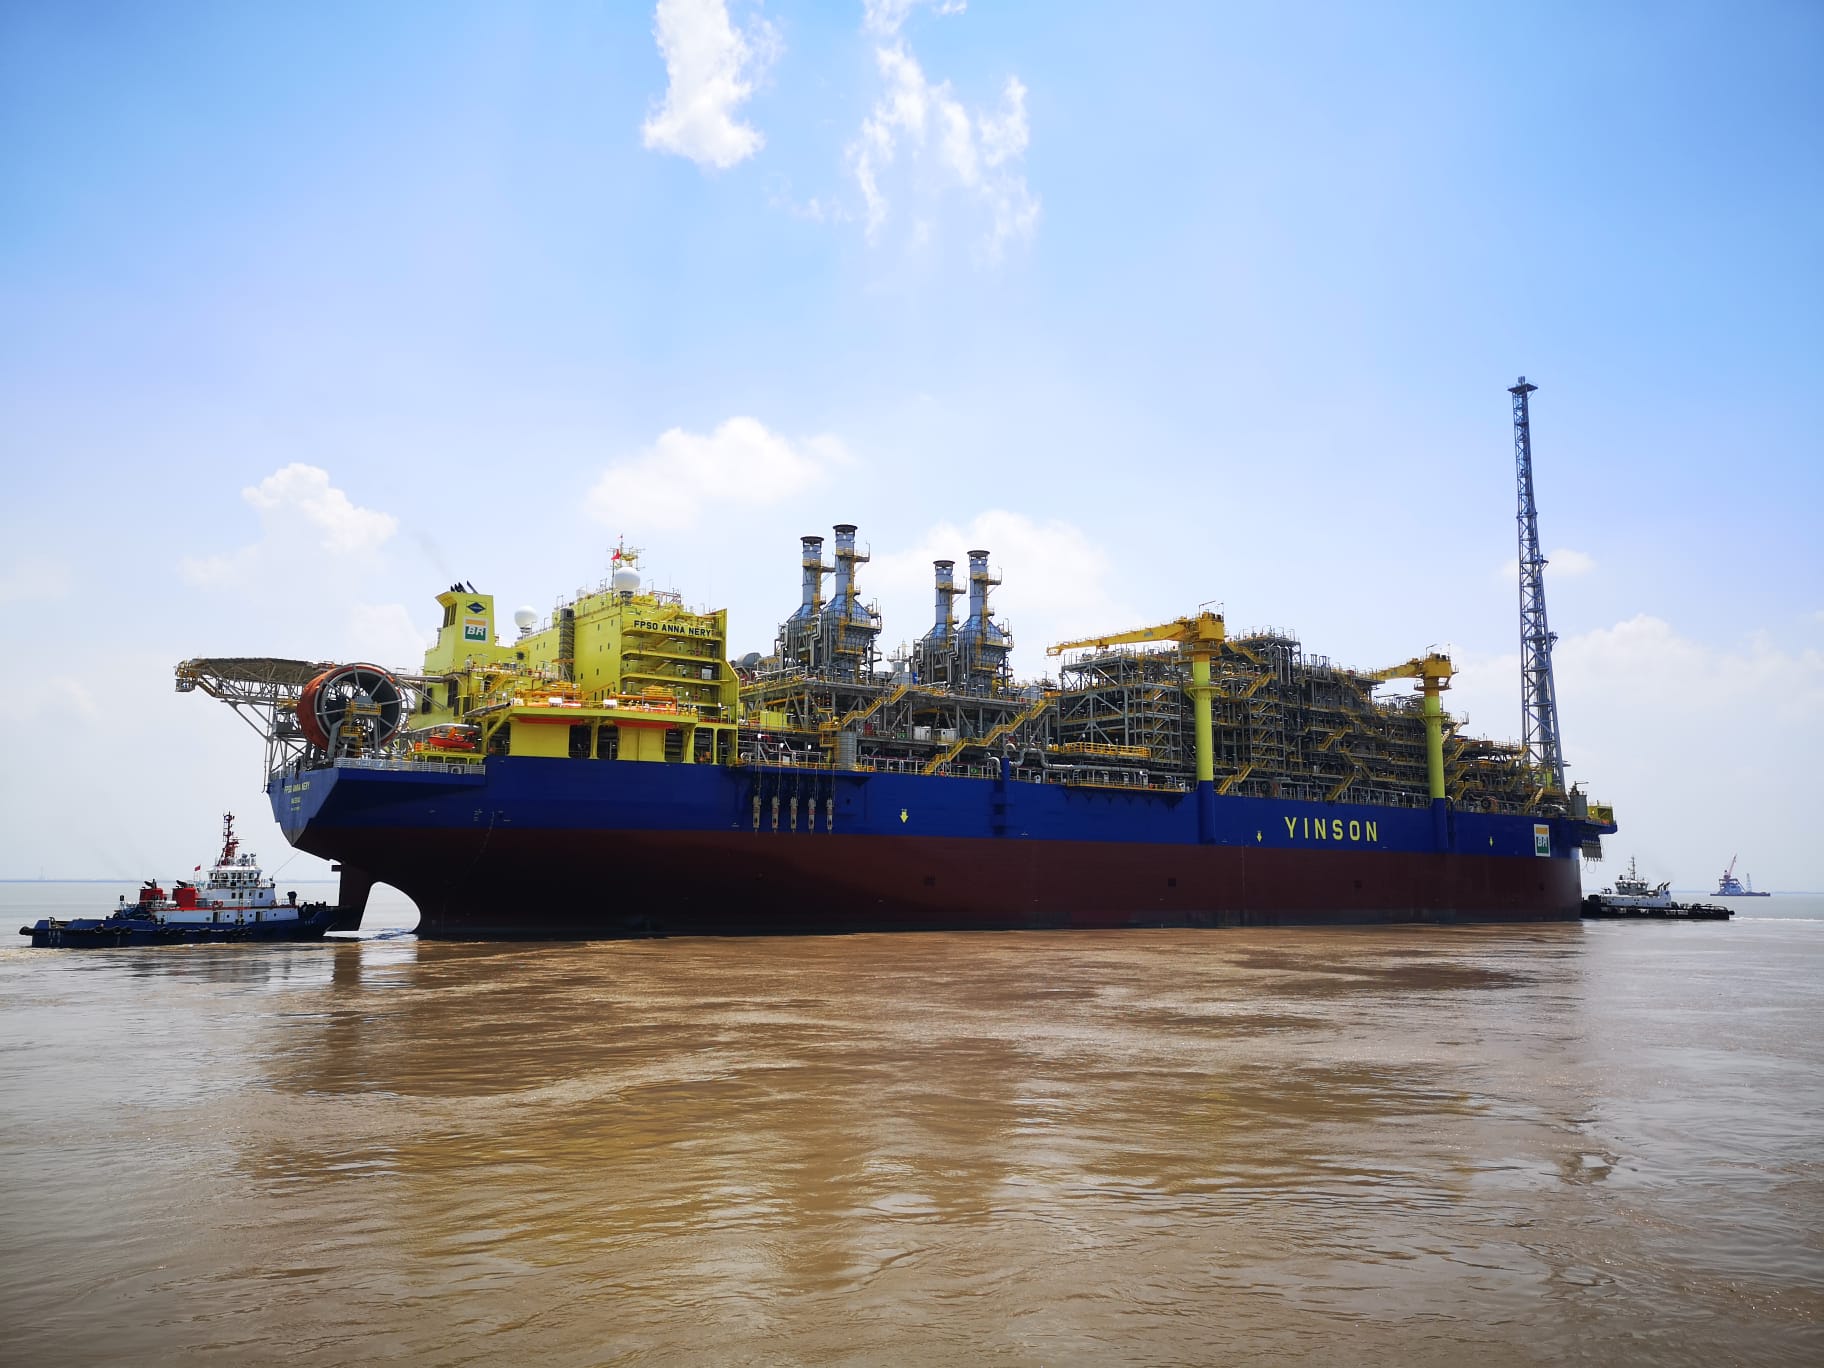 O Ibama emitiu a licença de operação para o FPSO Anna Nery, da Petrobras, no campo de Marlim da Bacia de Campos. O navio é uma das apostas da estatal para a retomada da produção em campos maduros na região.